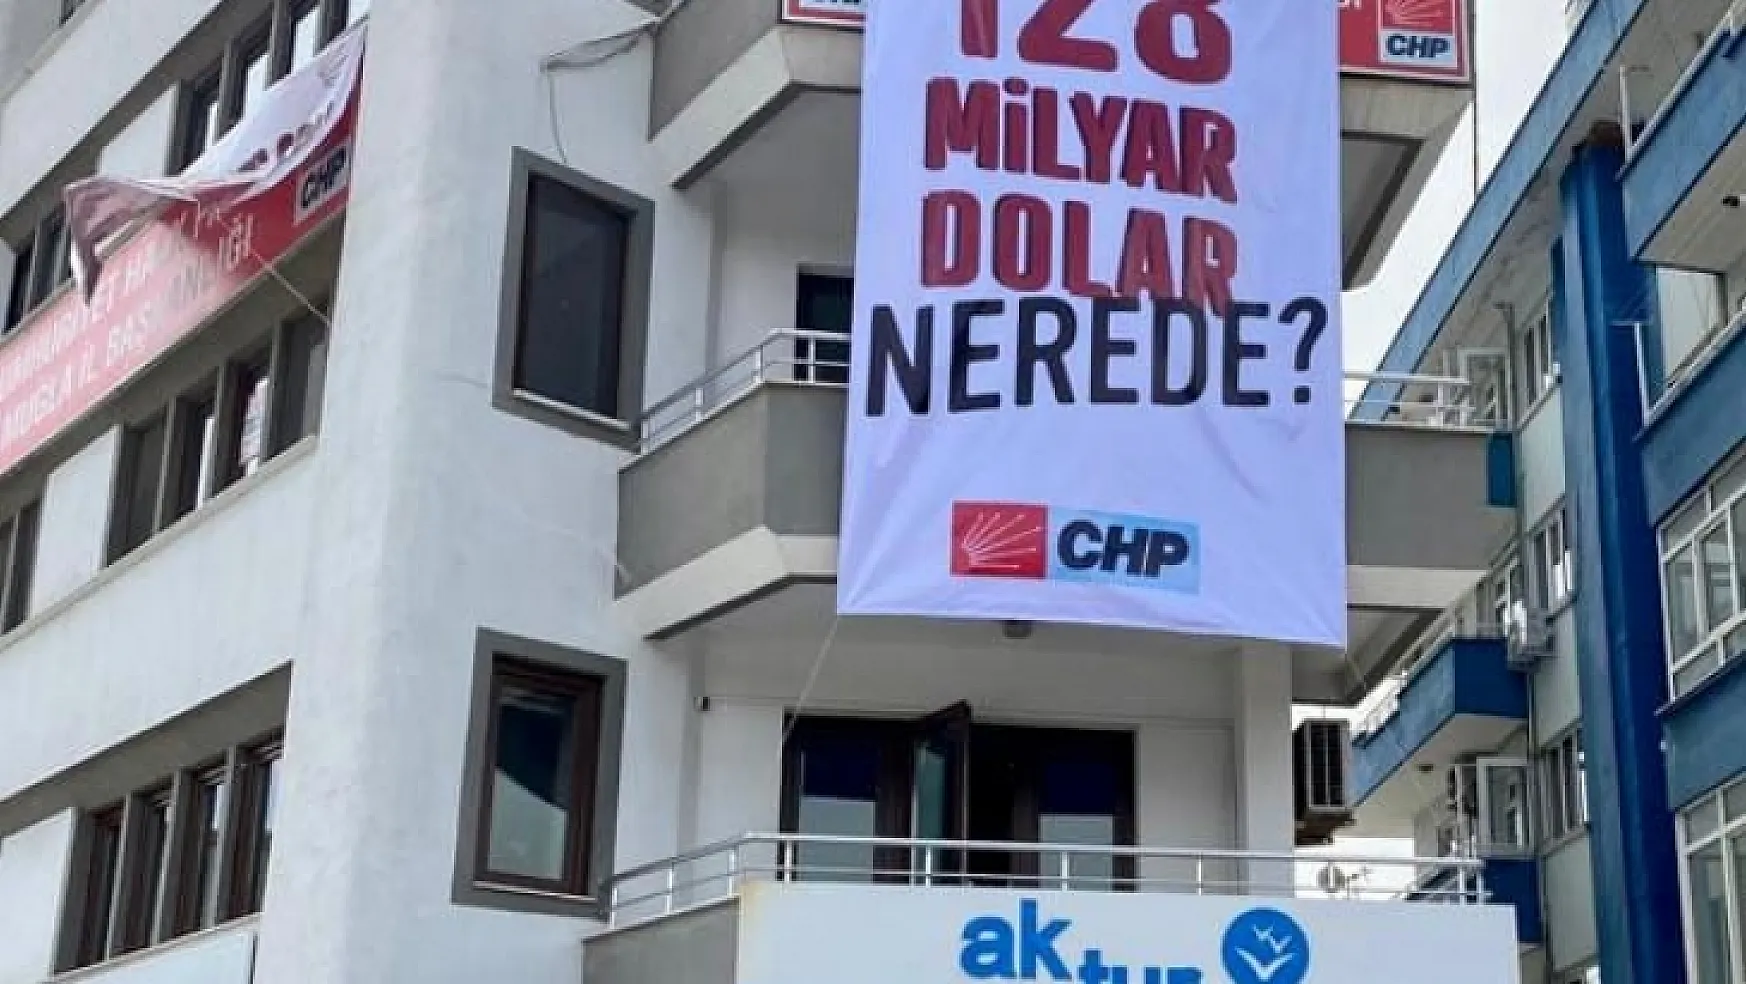 CHP Muğla İl Binasındaki '128 milyar dolar nerede?' yazılı afiş kaldırıldı